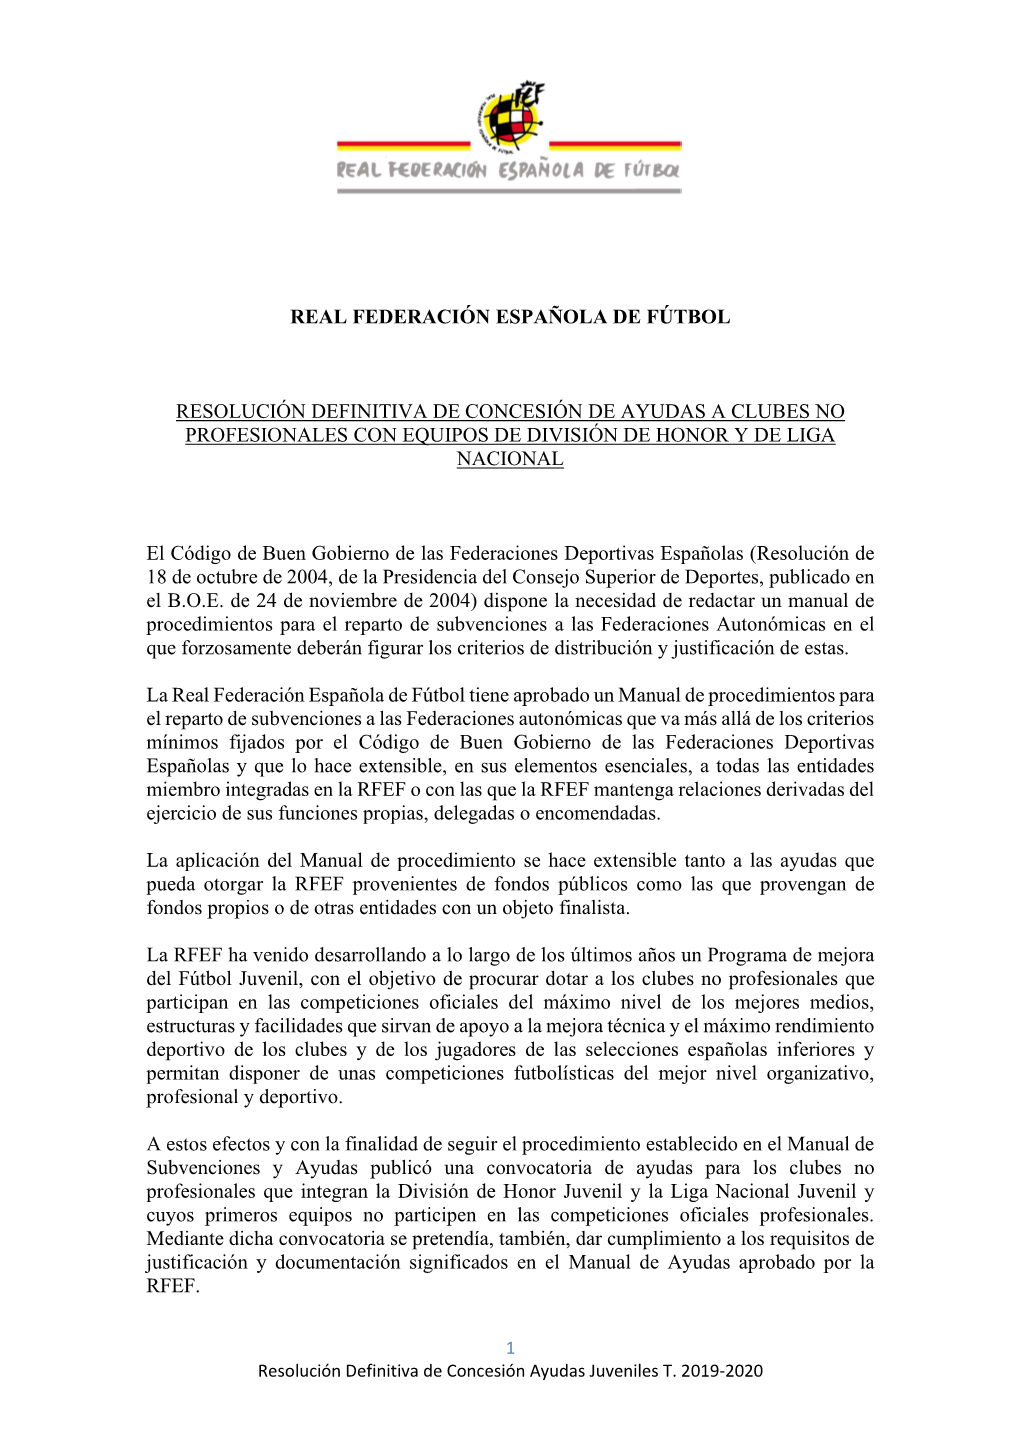 Resolución Definitiva De Concesión De Ayudas a Clubes No Profesionales Con Equipos De División De Honor Y De Liga Nacional